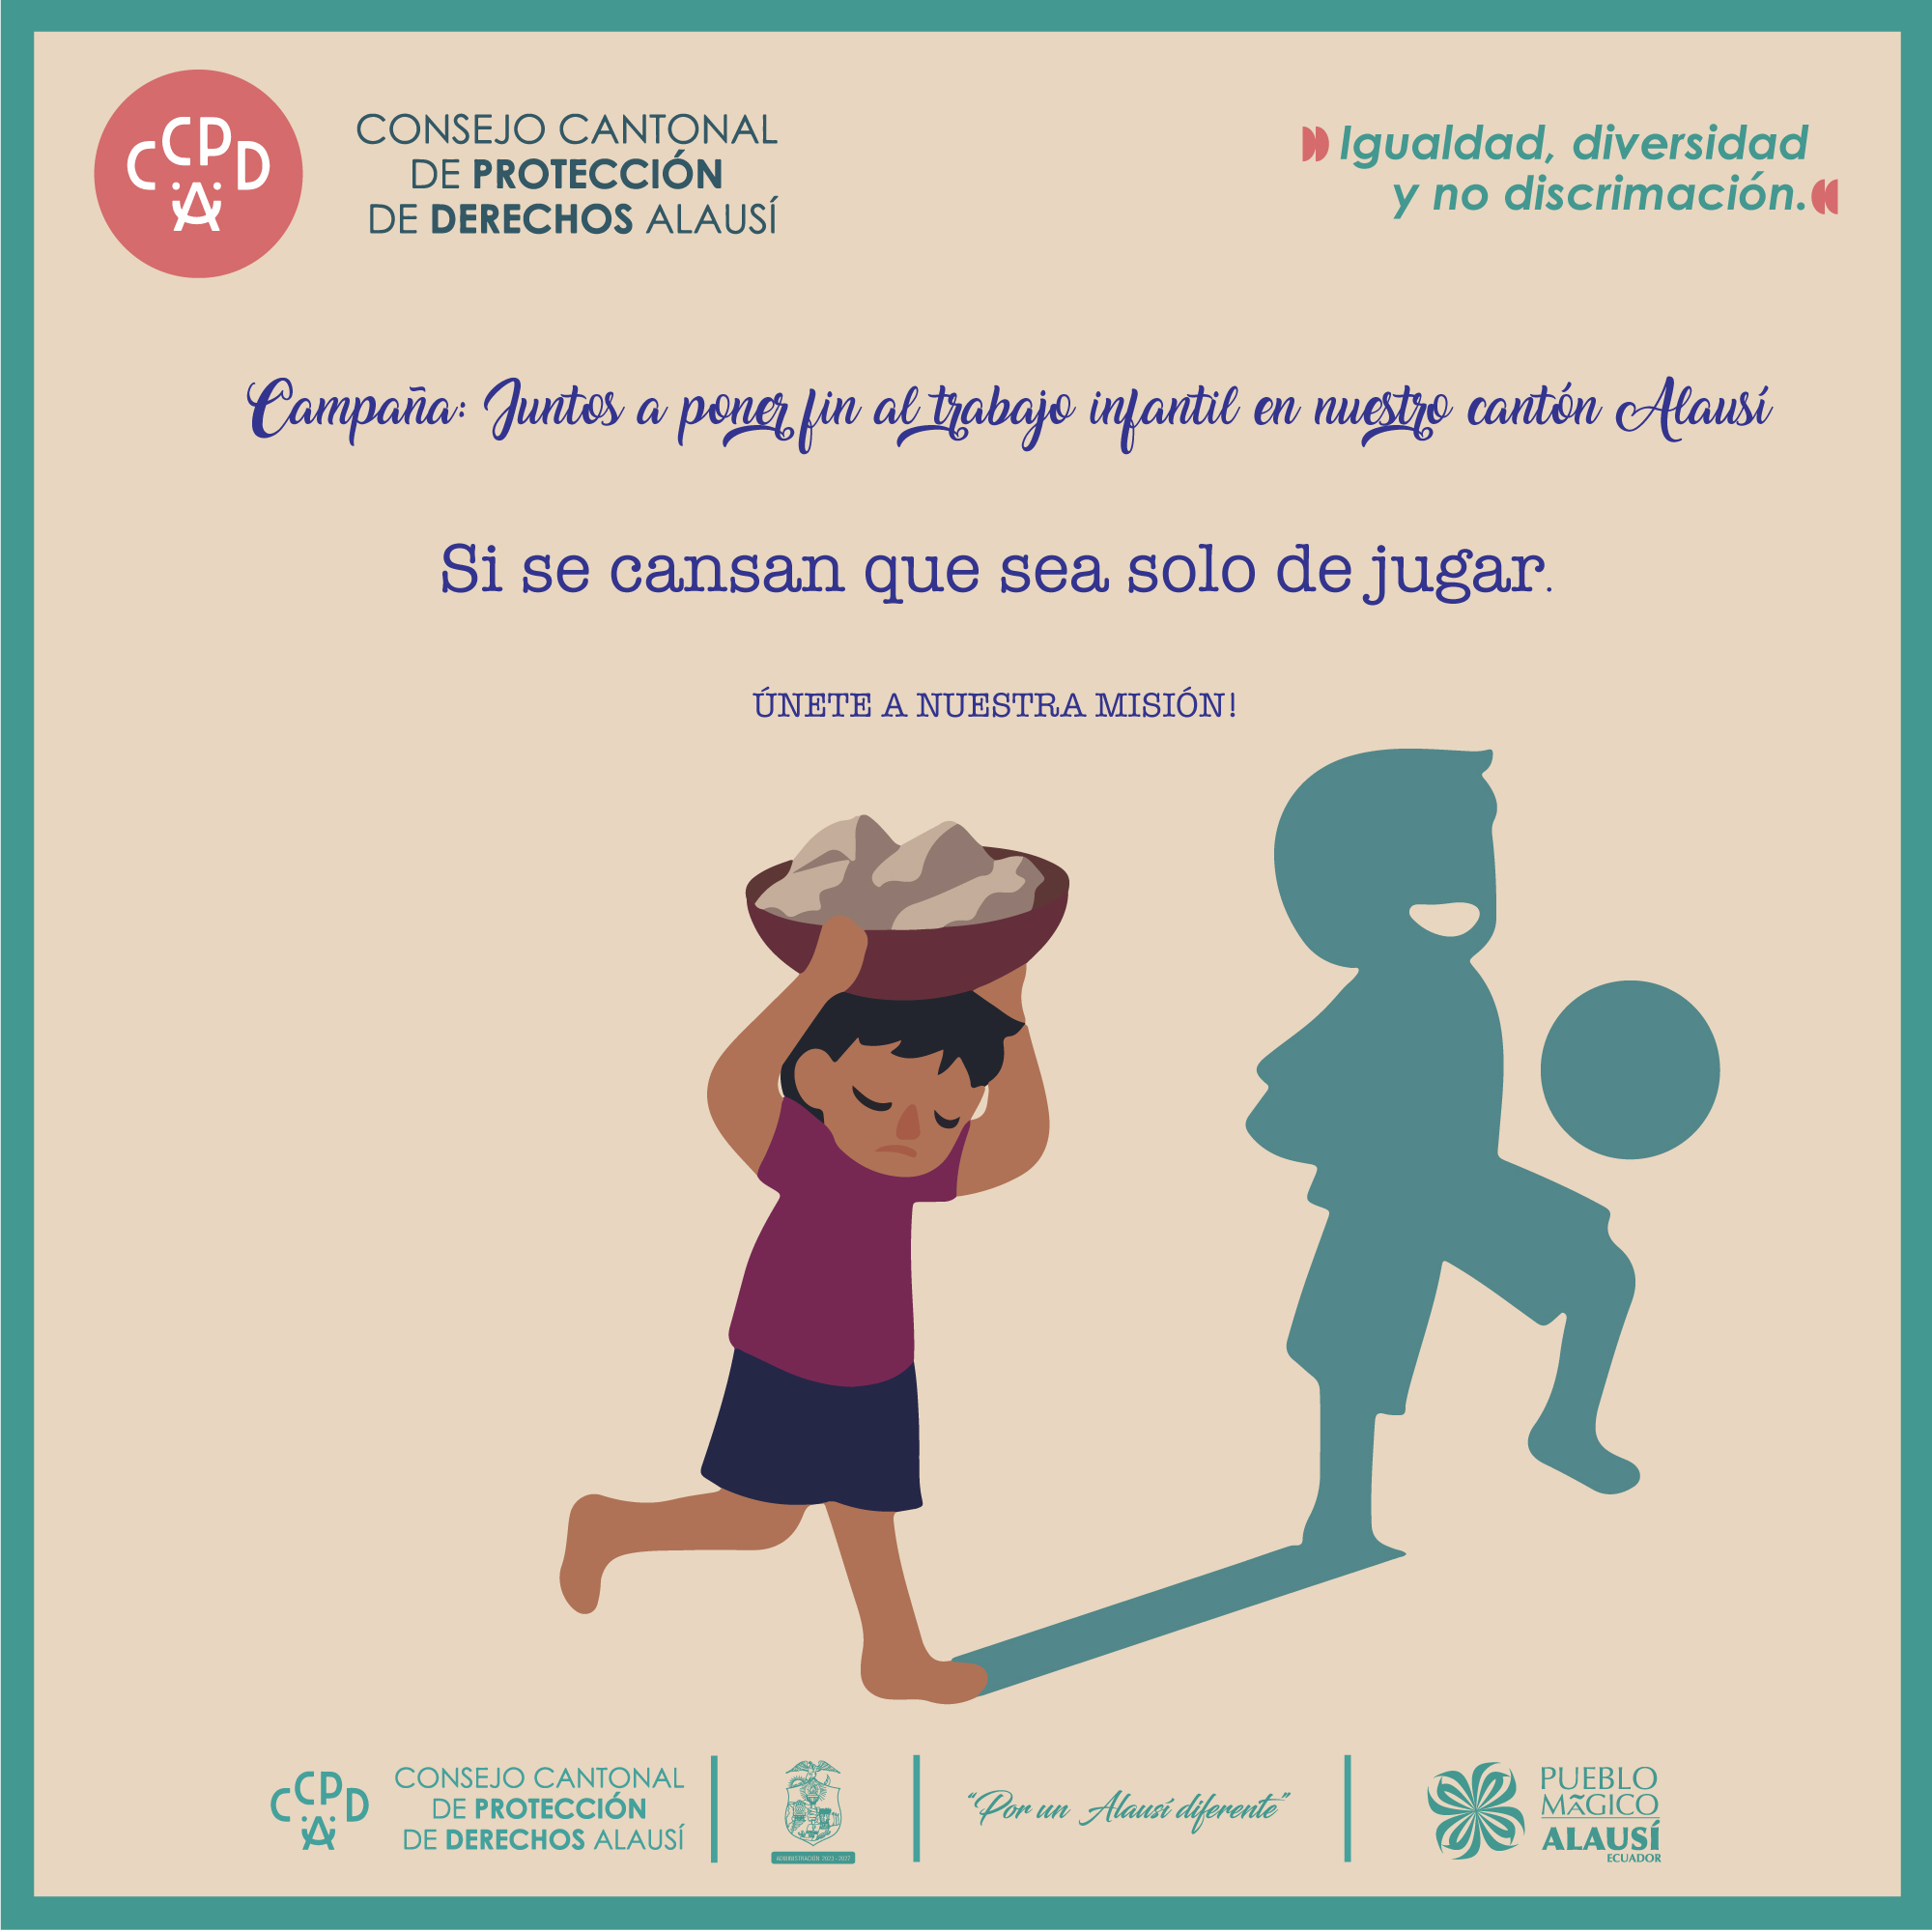 CAMPAÑA: JUNTOS A PONER FIN AL TRABAJO INFANTIL